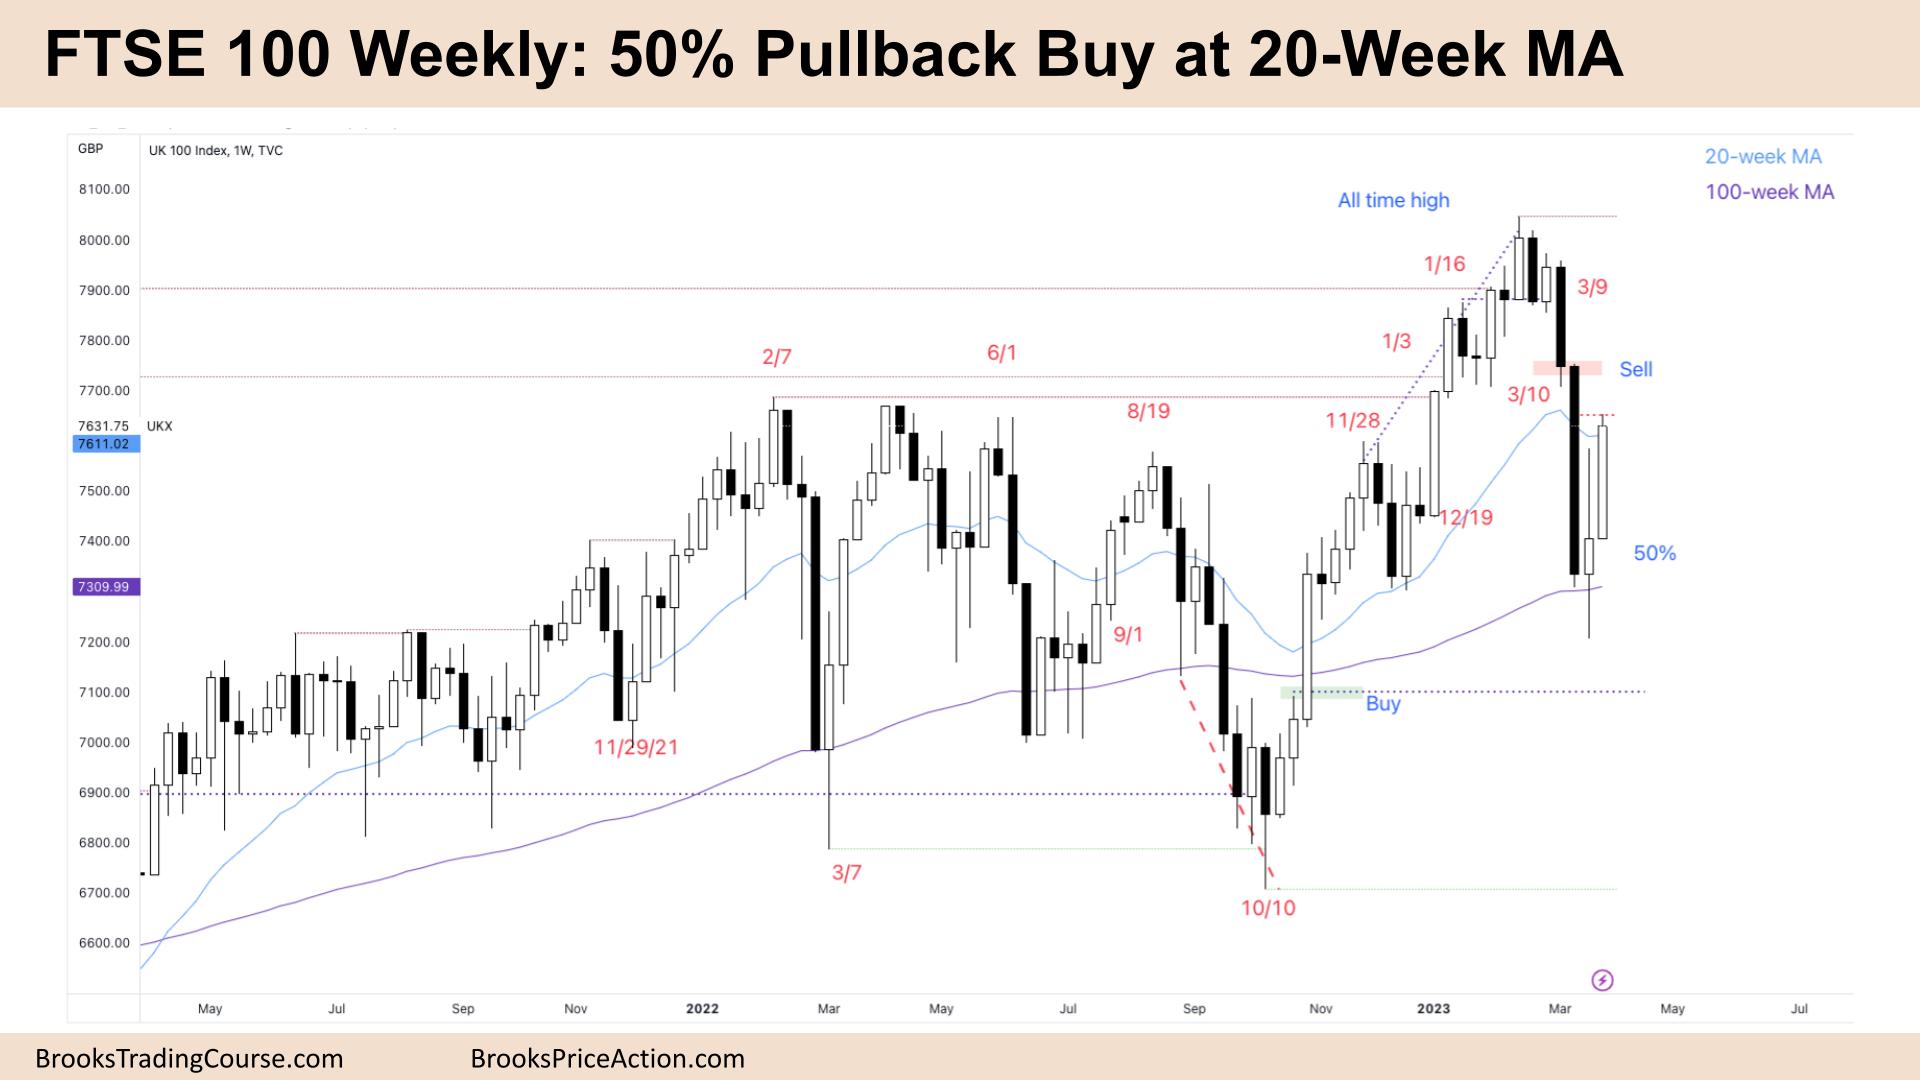 FTSE 100 50% Pullback Buy at 20-Week MA